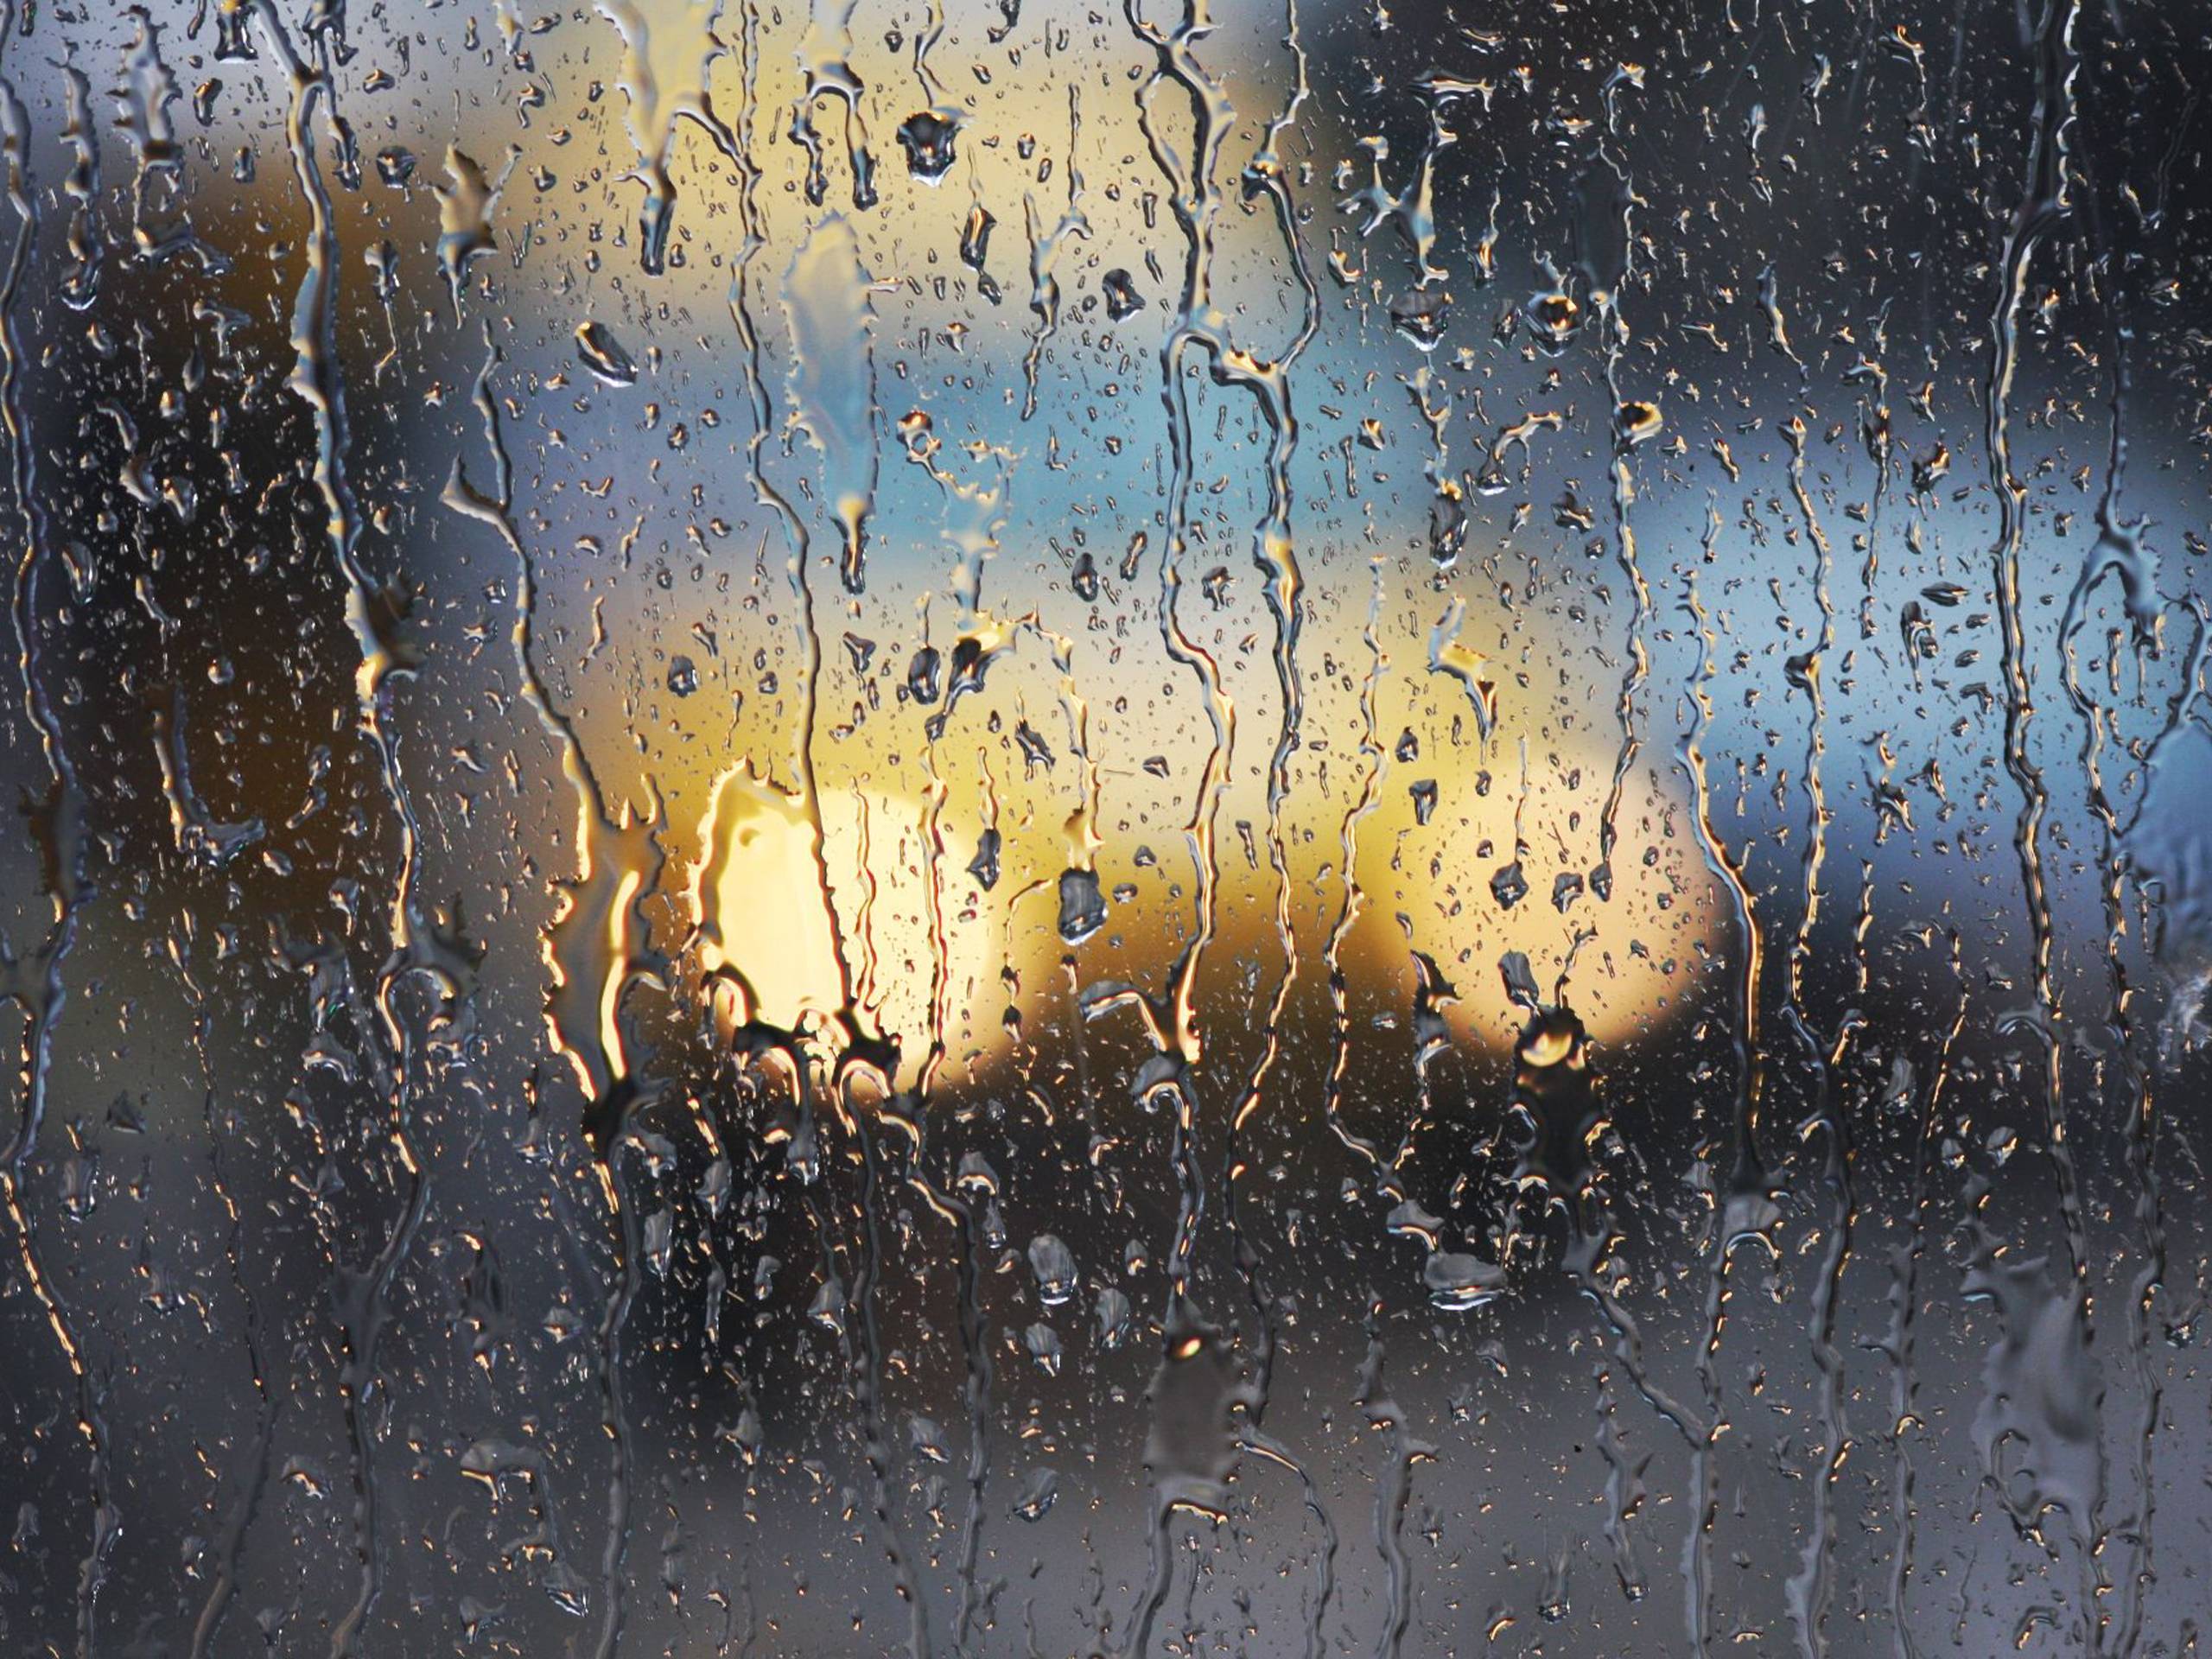 Rain wallpaper для windows 10 как пользоваться